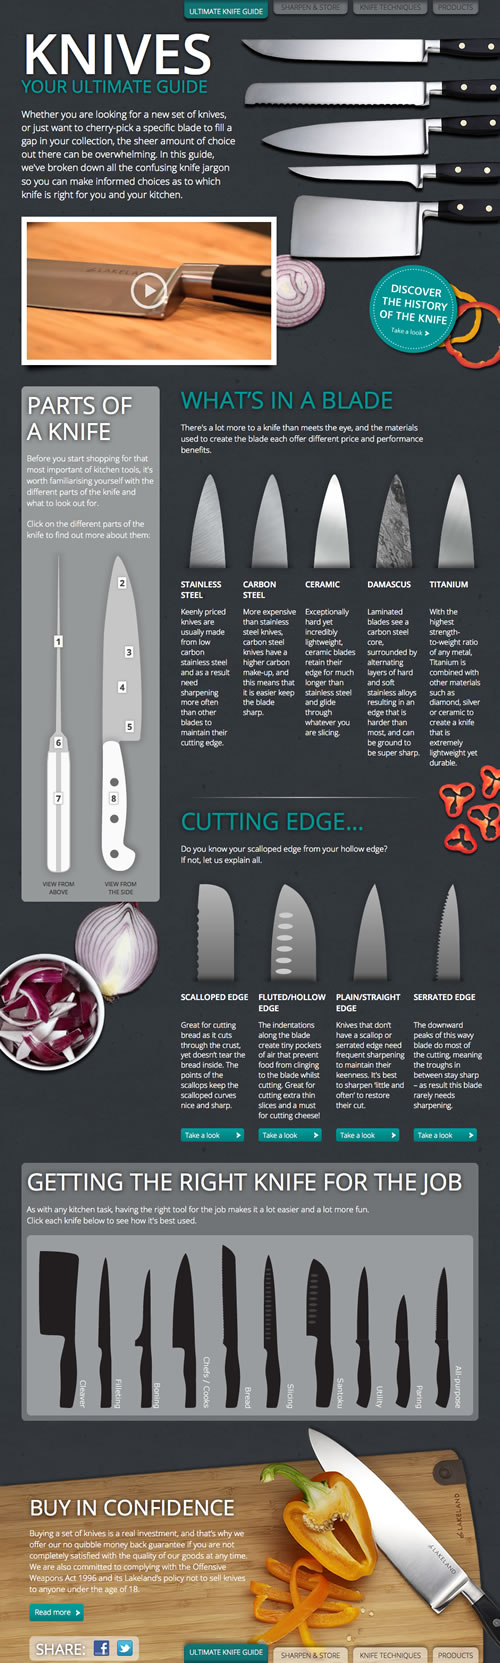 Knife guide